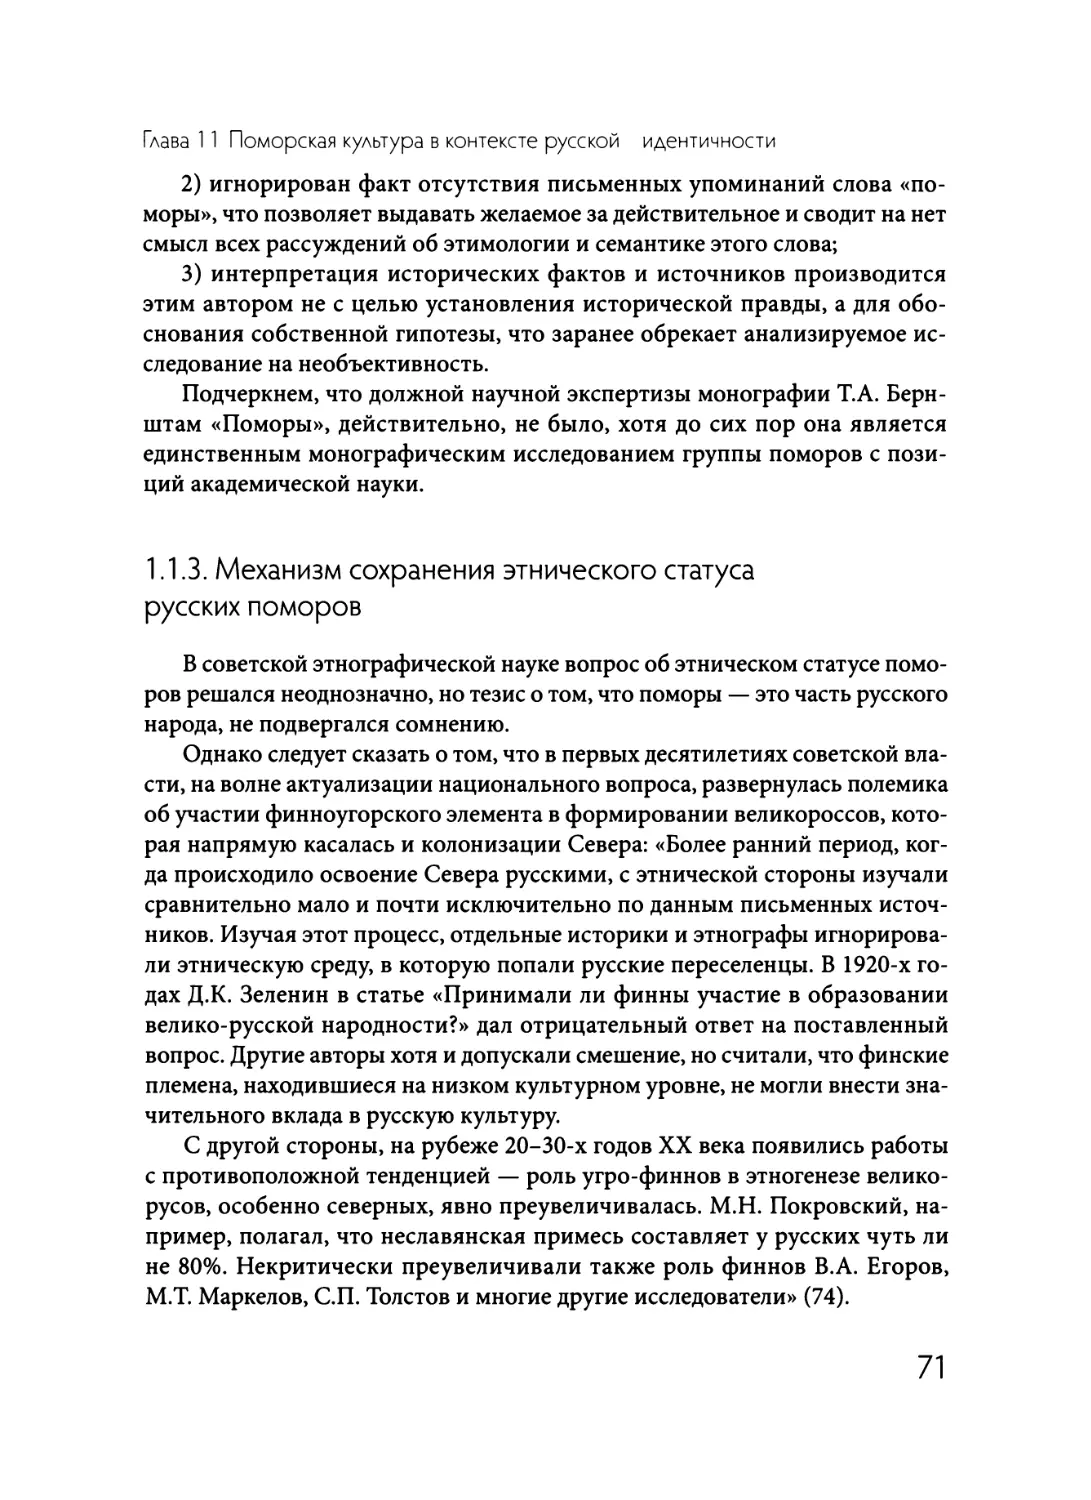 1.1.3  Механизм  сохранения  этнического  статуса  русских  поморов